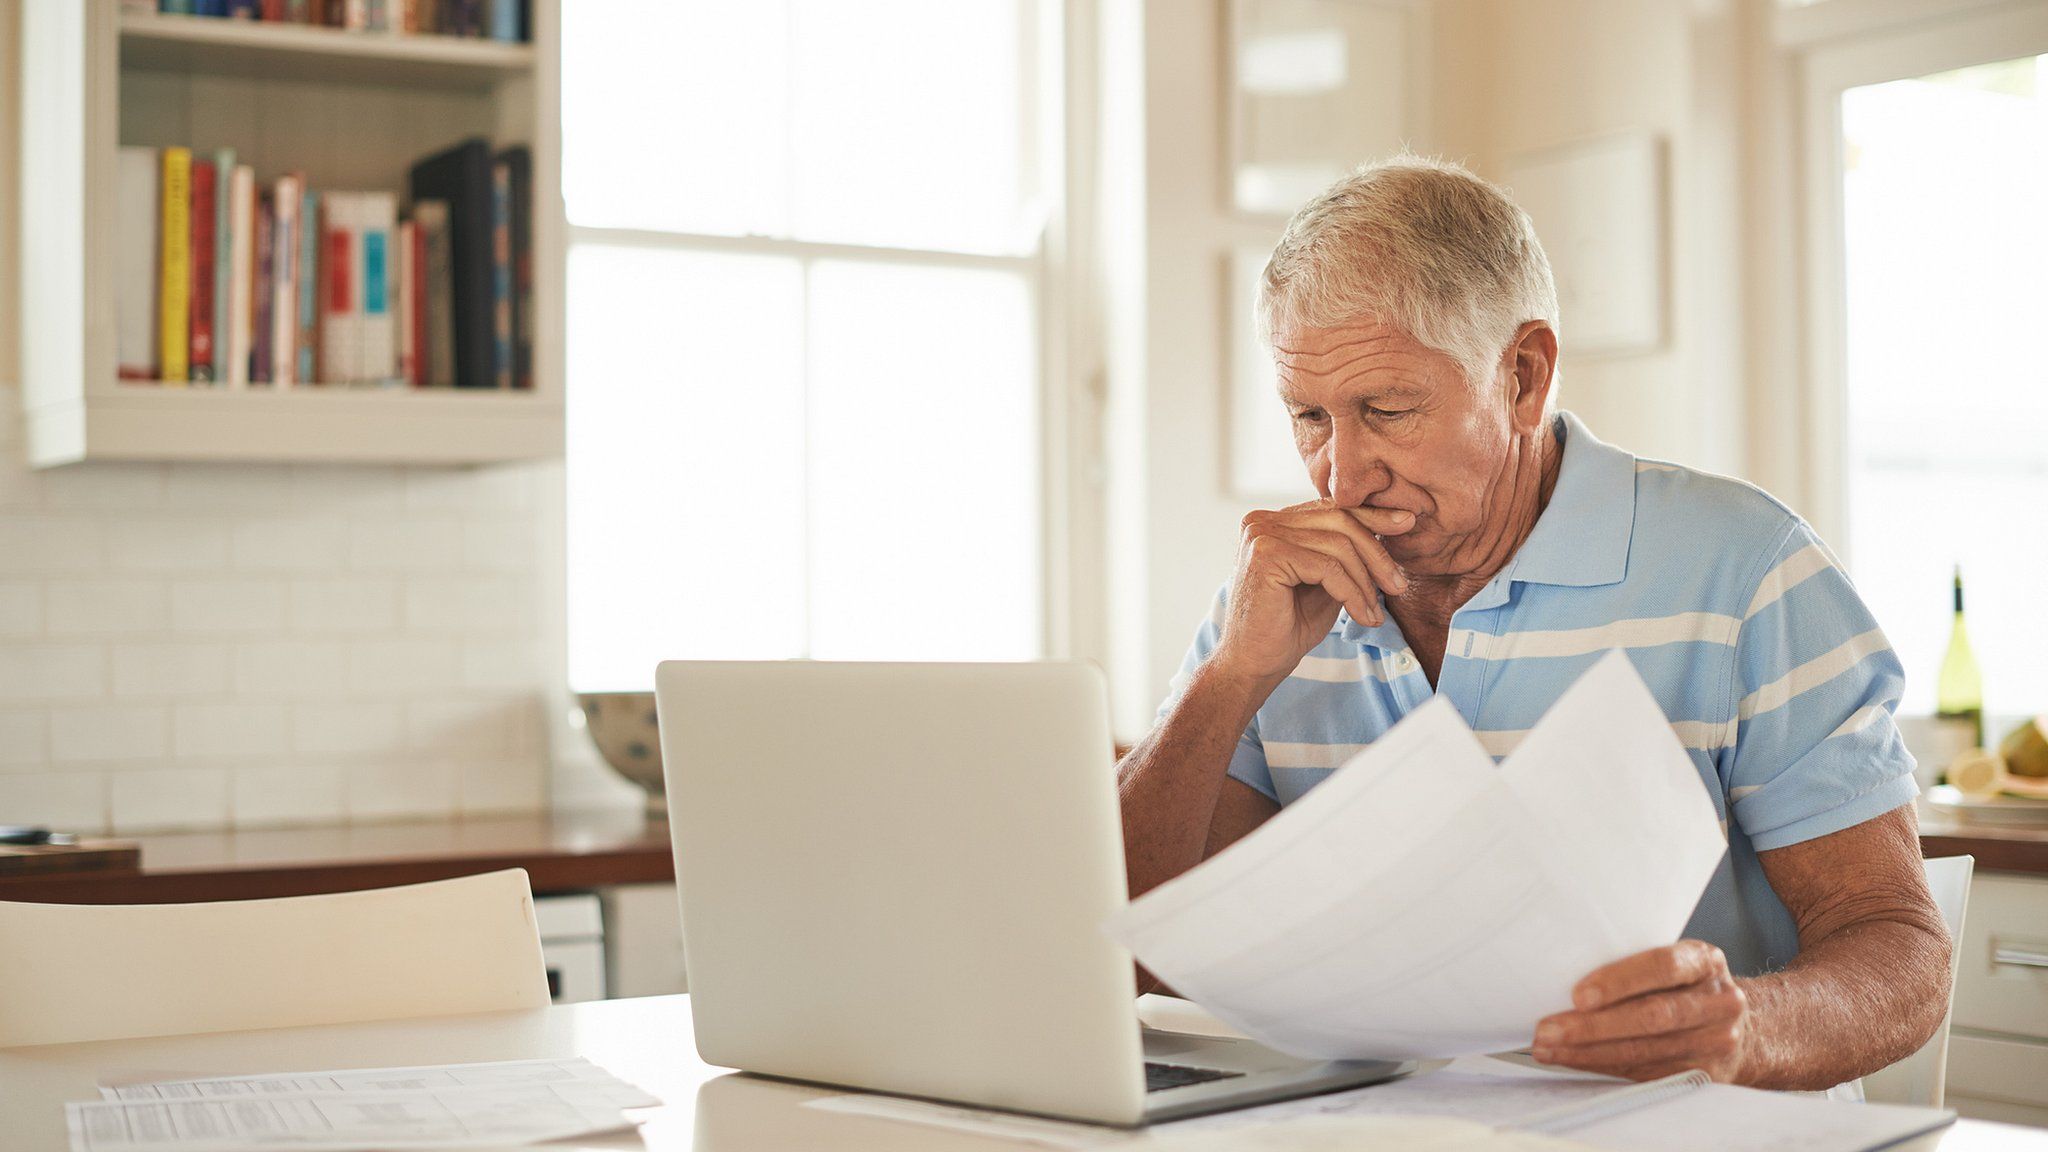 Elderly man worried by finances